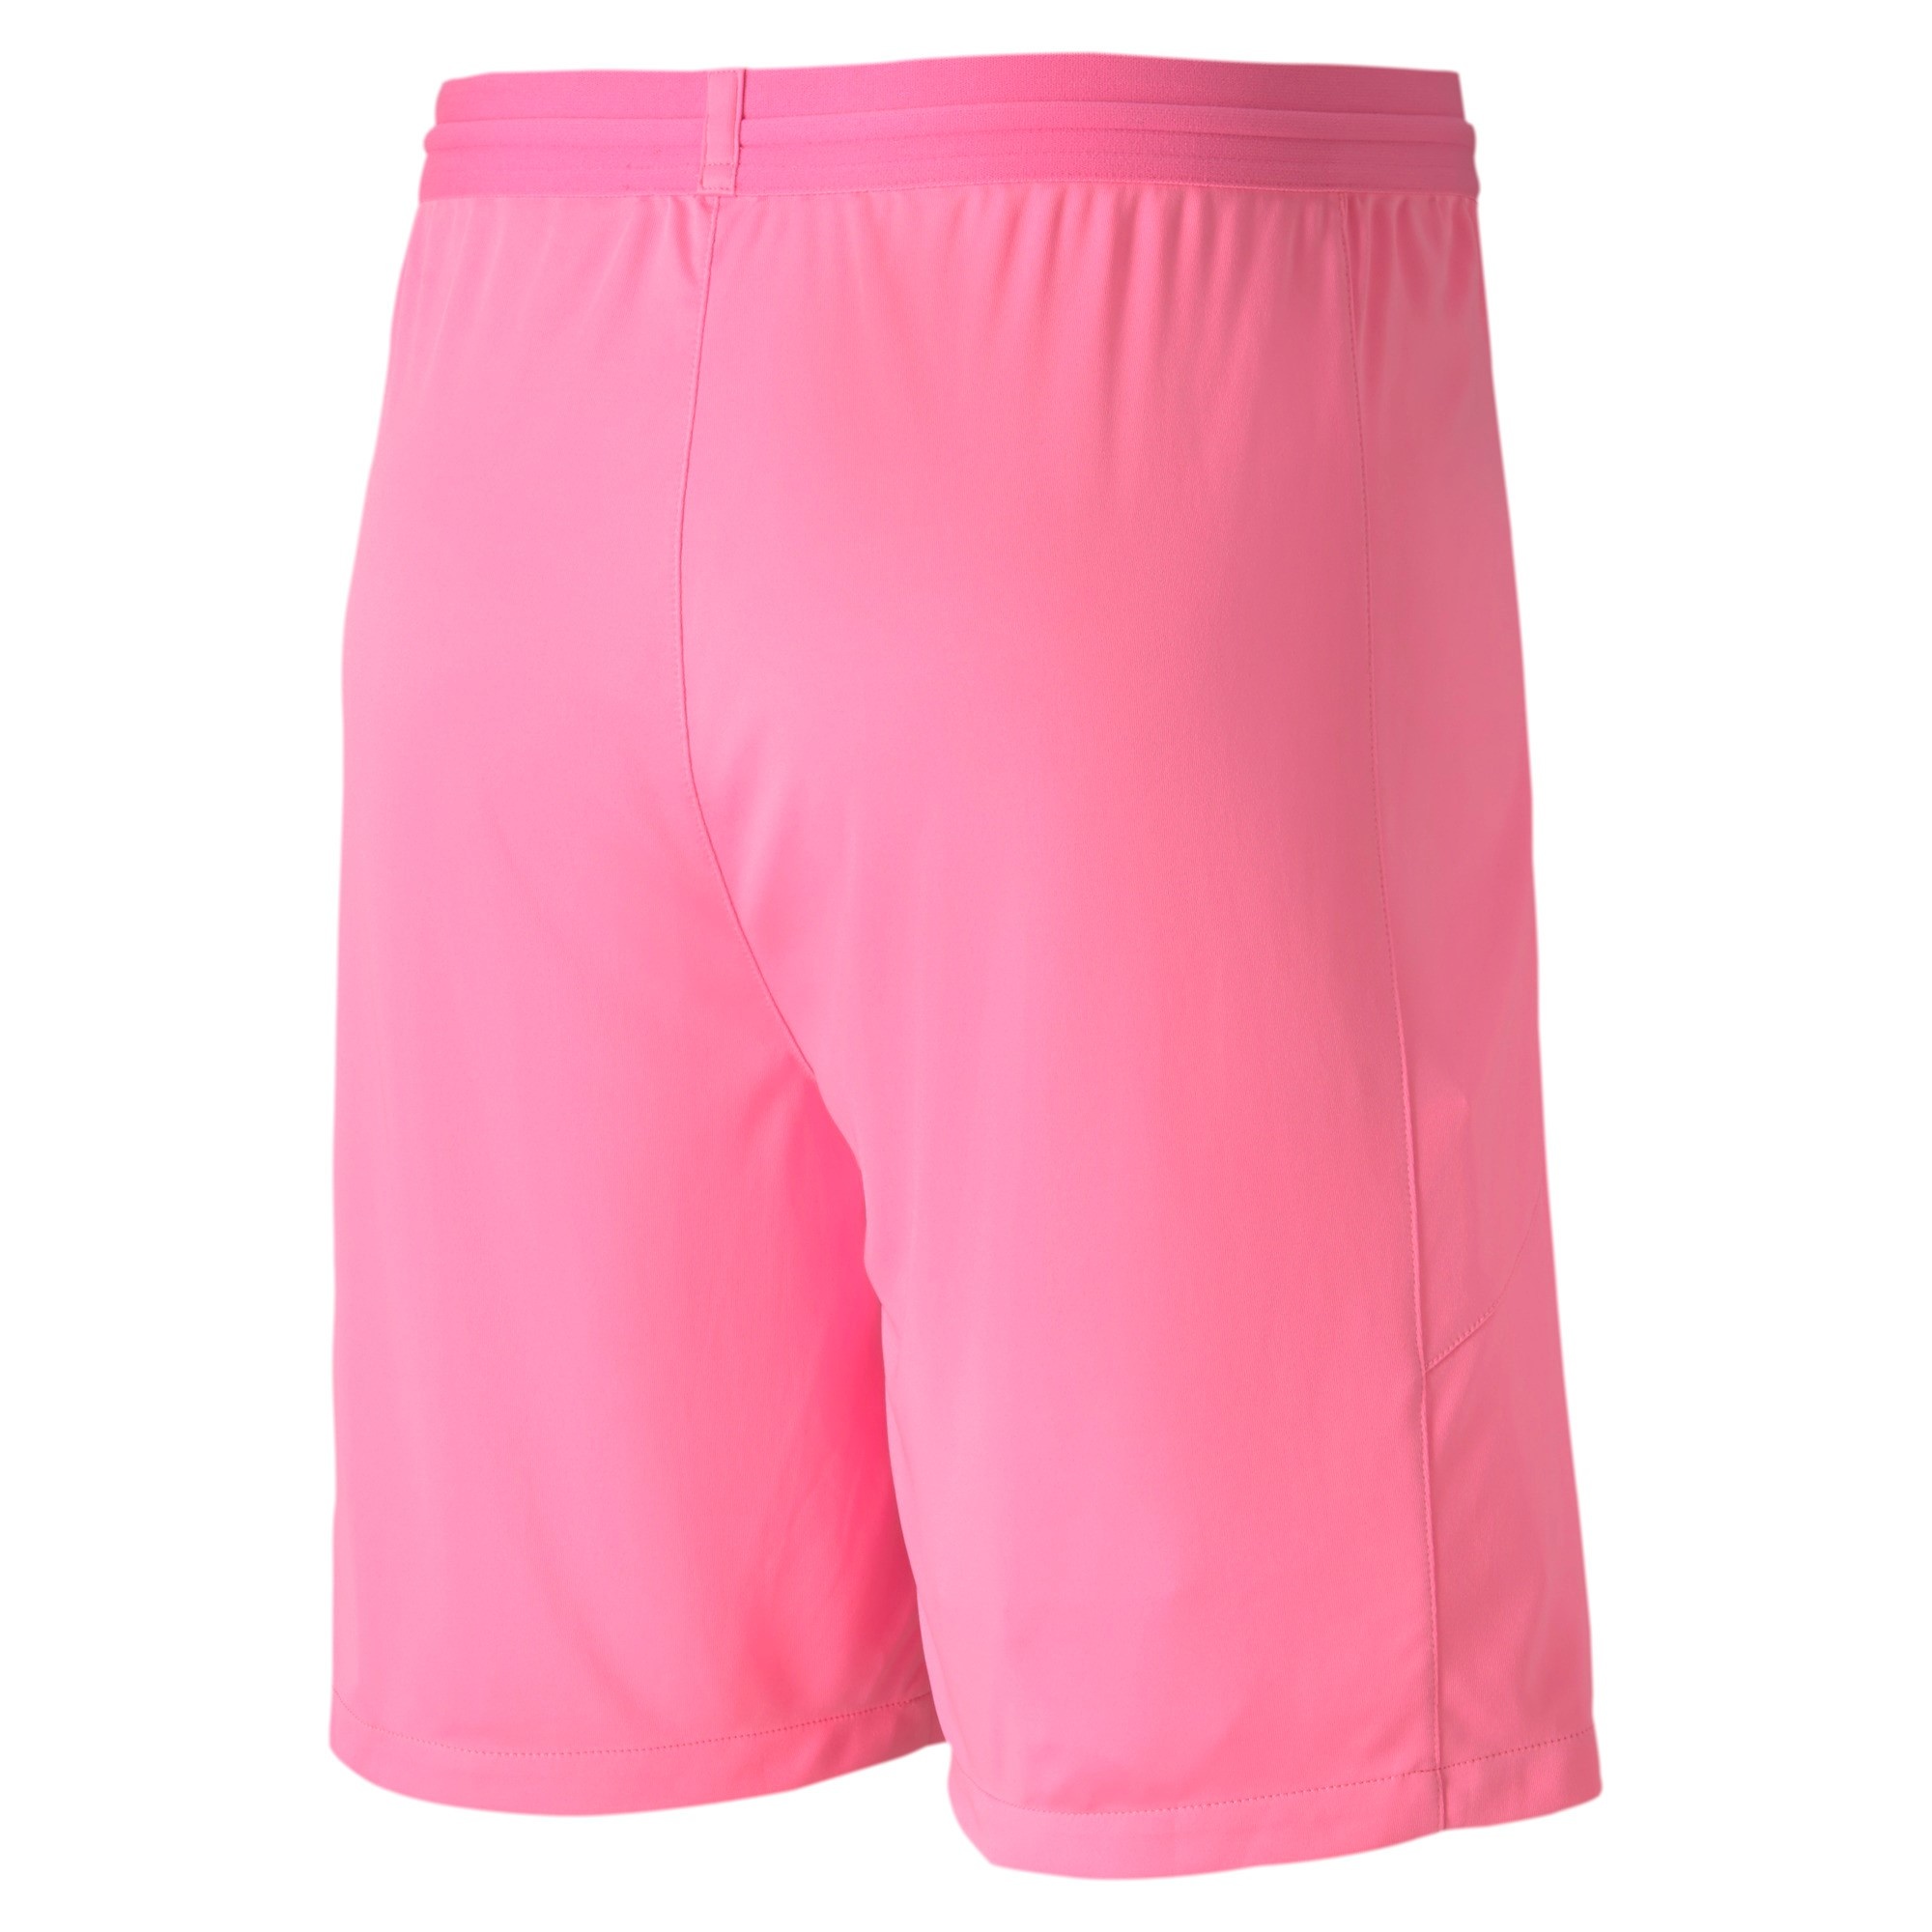 pink puma shorts